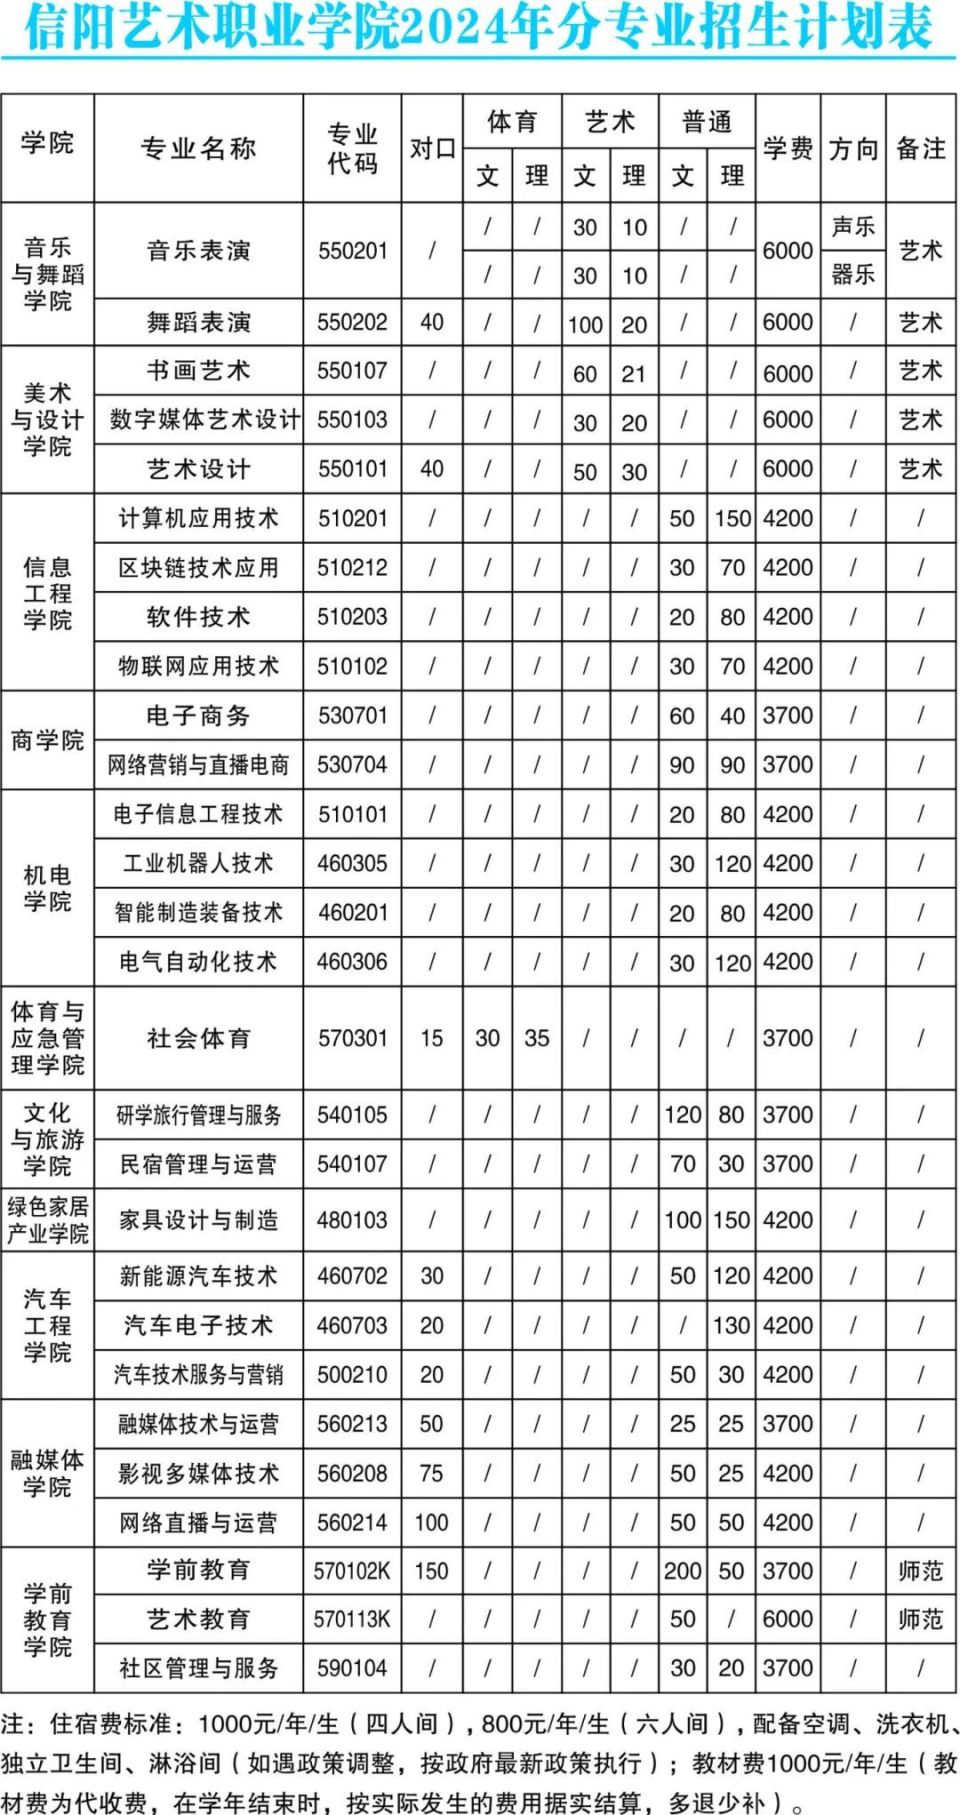 林州建筑职业技术学院,信阳艺术职业学院2024年招生计划及历年分数线